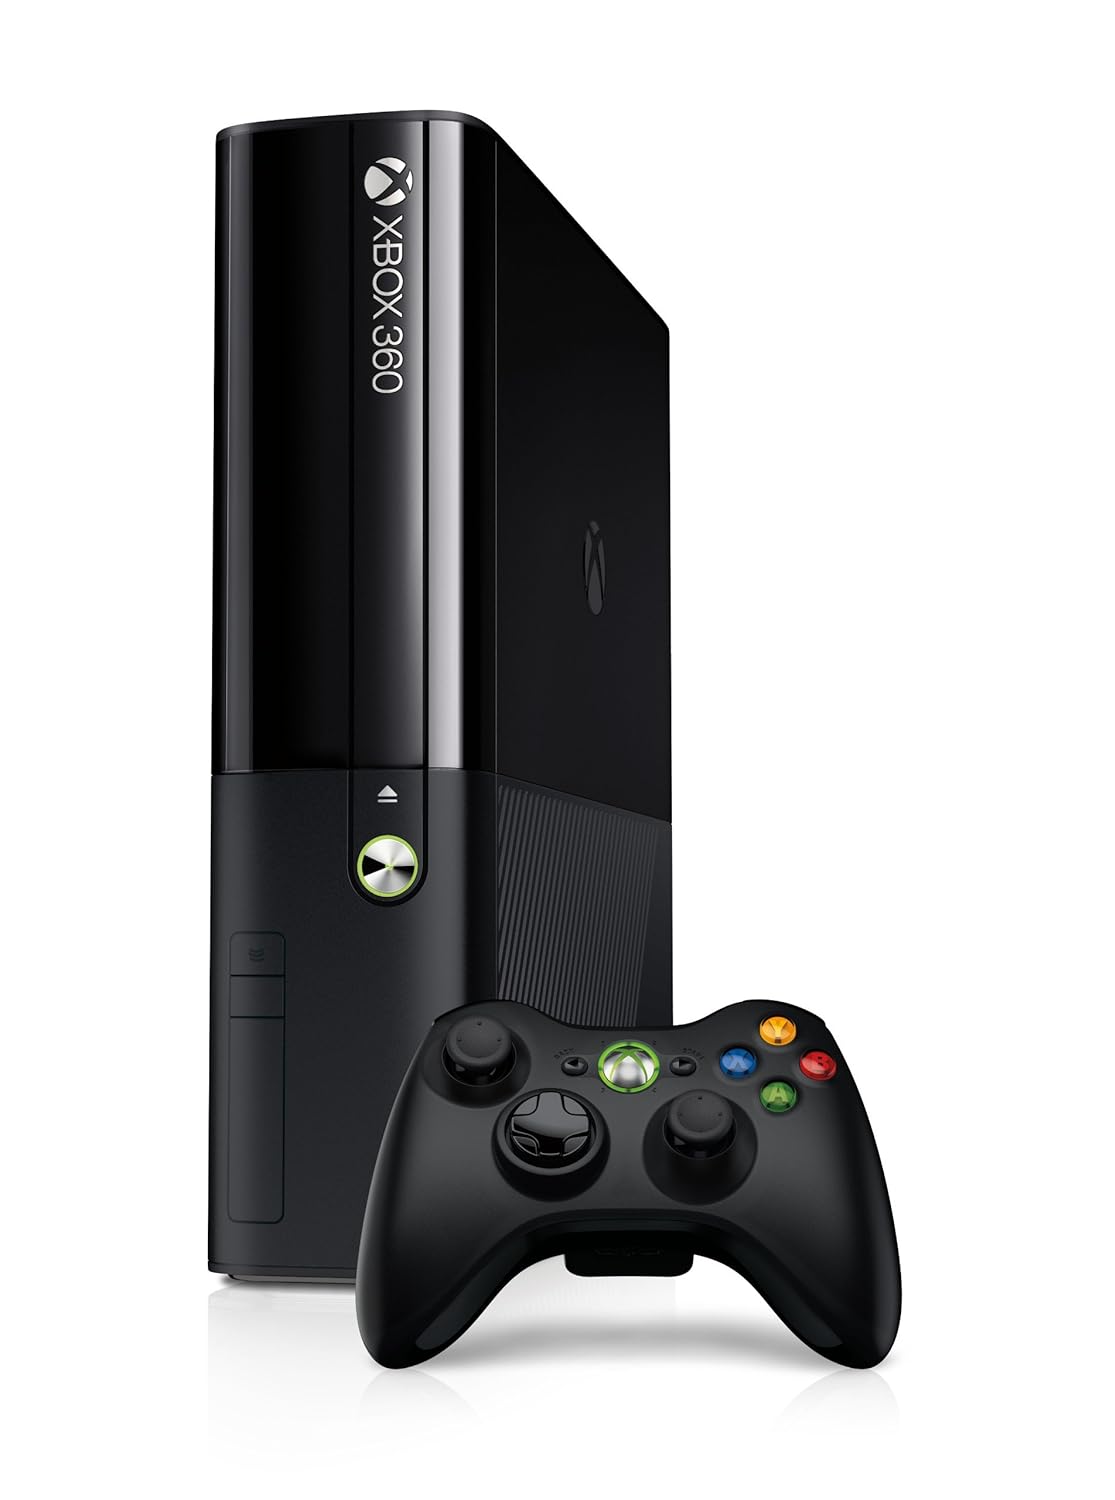 Xbox 360 E 4GB Console - Black